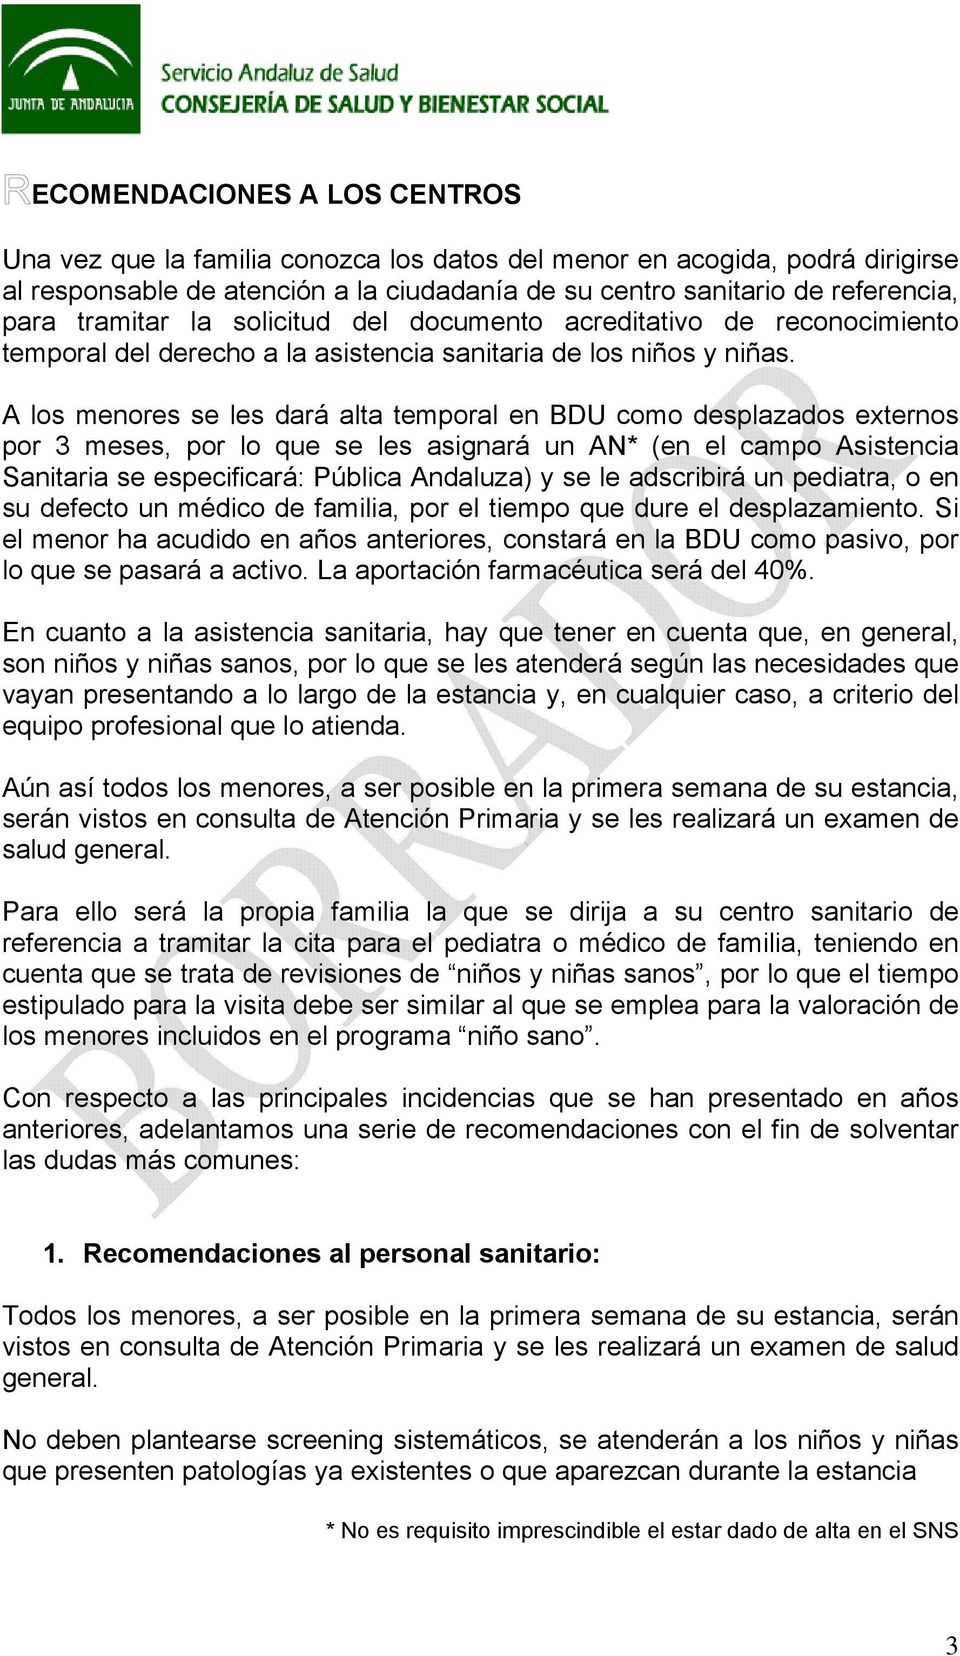 A los menores se les dará alta temporal en BDU como desplazados externos por 3 meses, por lo que se les asignará un AN* (en el campo Asistencia Sanitaria se especificará: Pública Andaluza) y se le